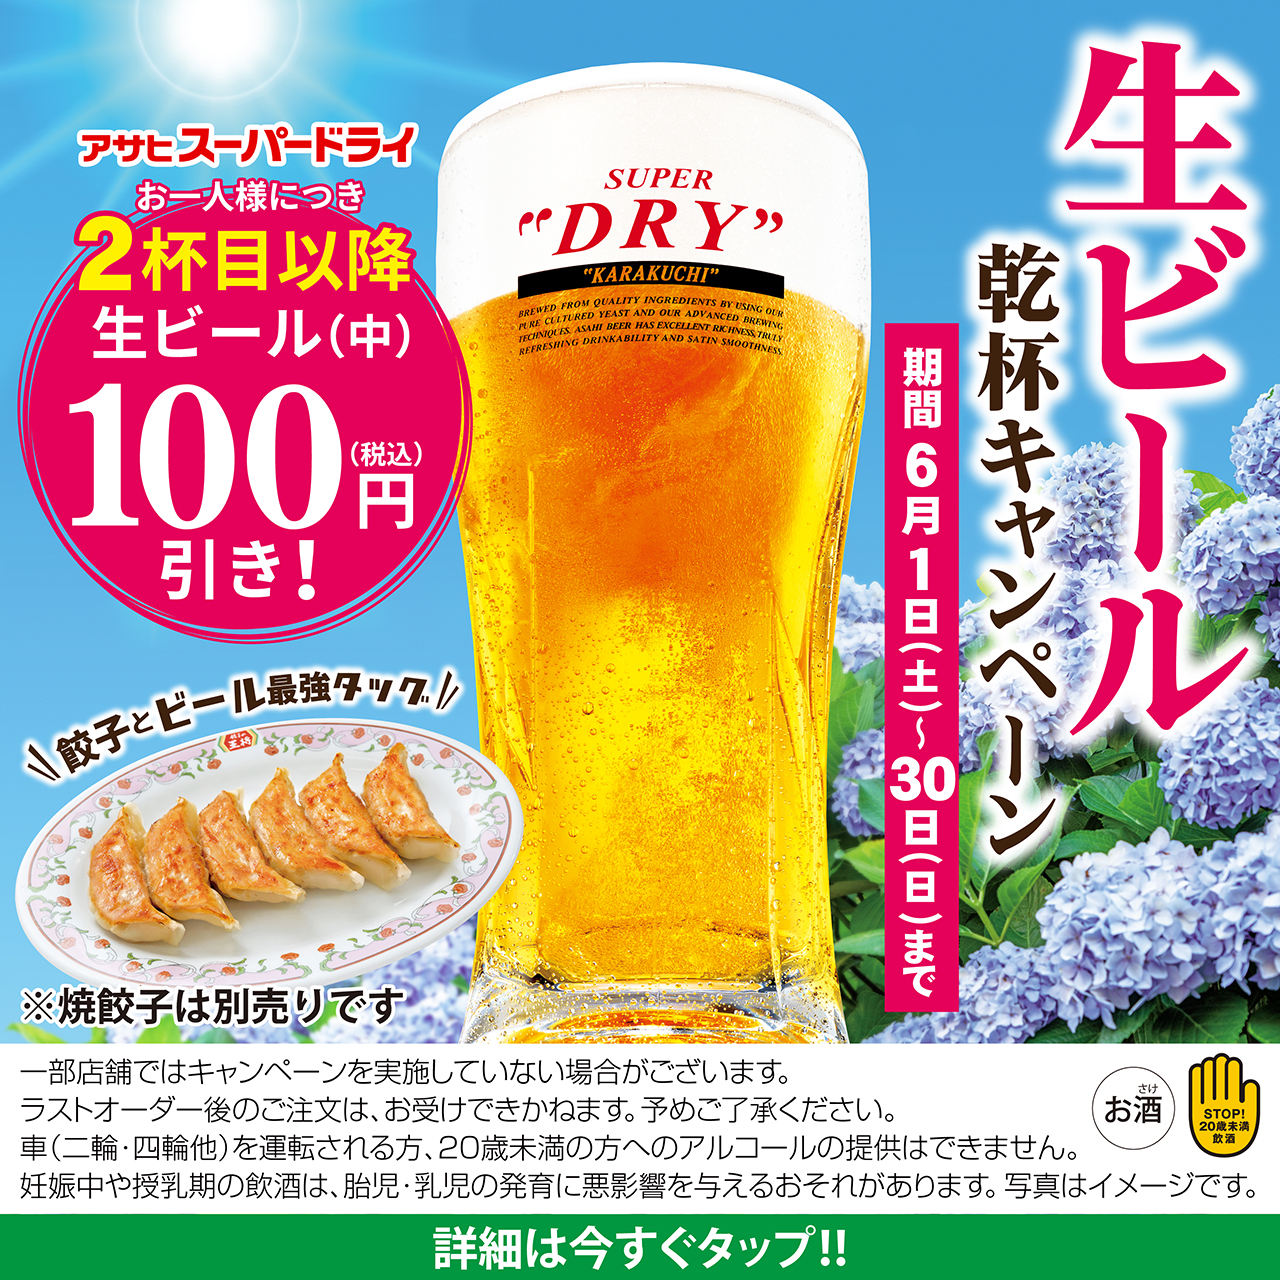 【6月1日〜30日】生ビール乾杯キャンペーン開催!!